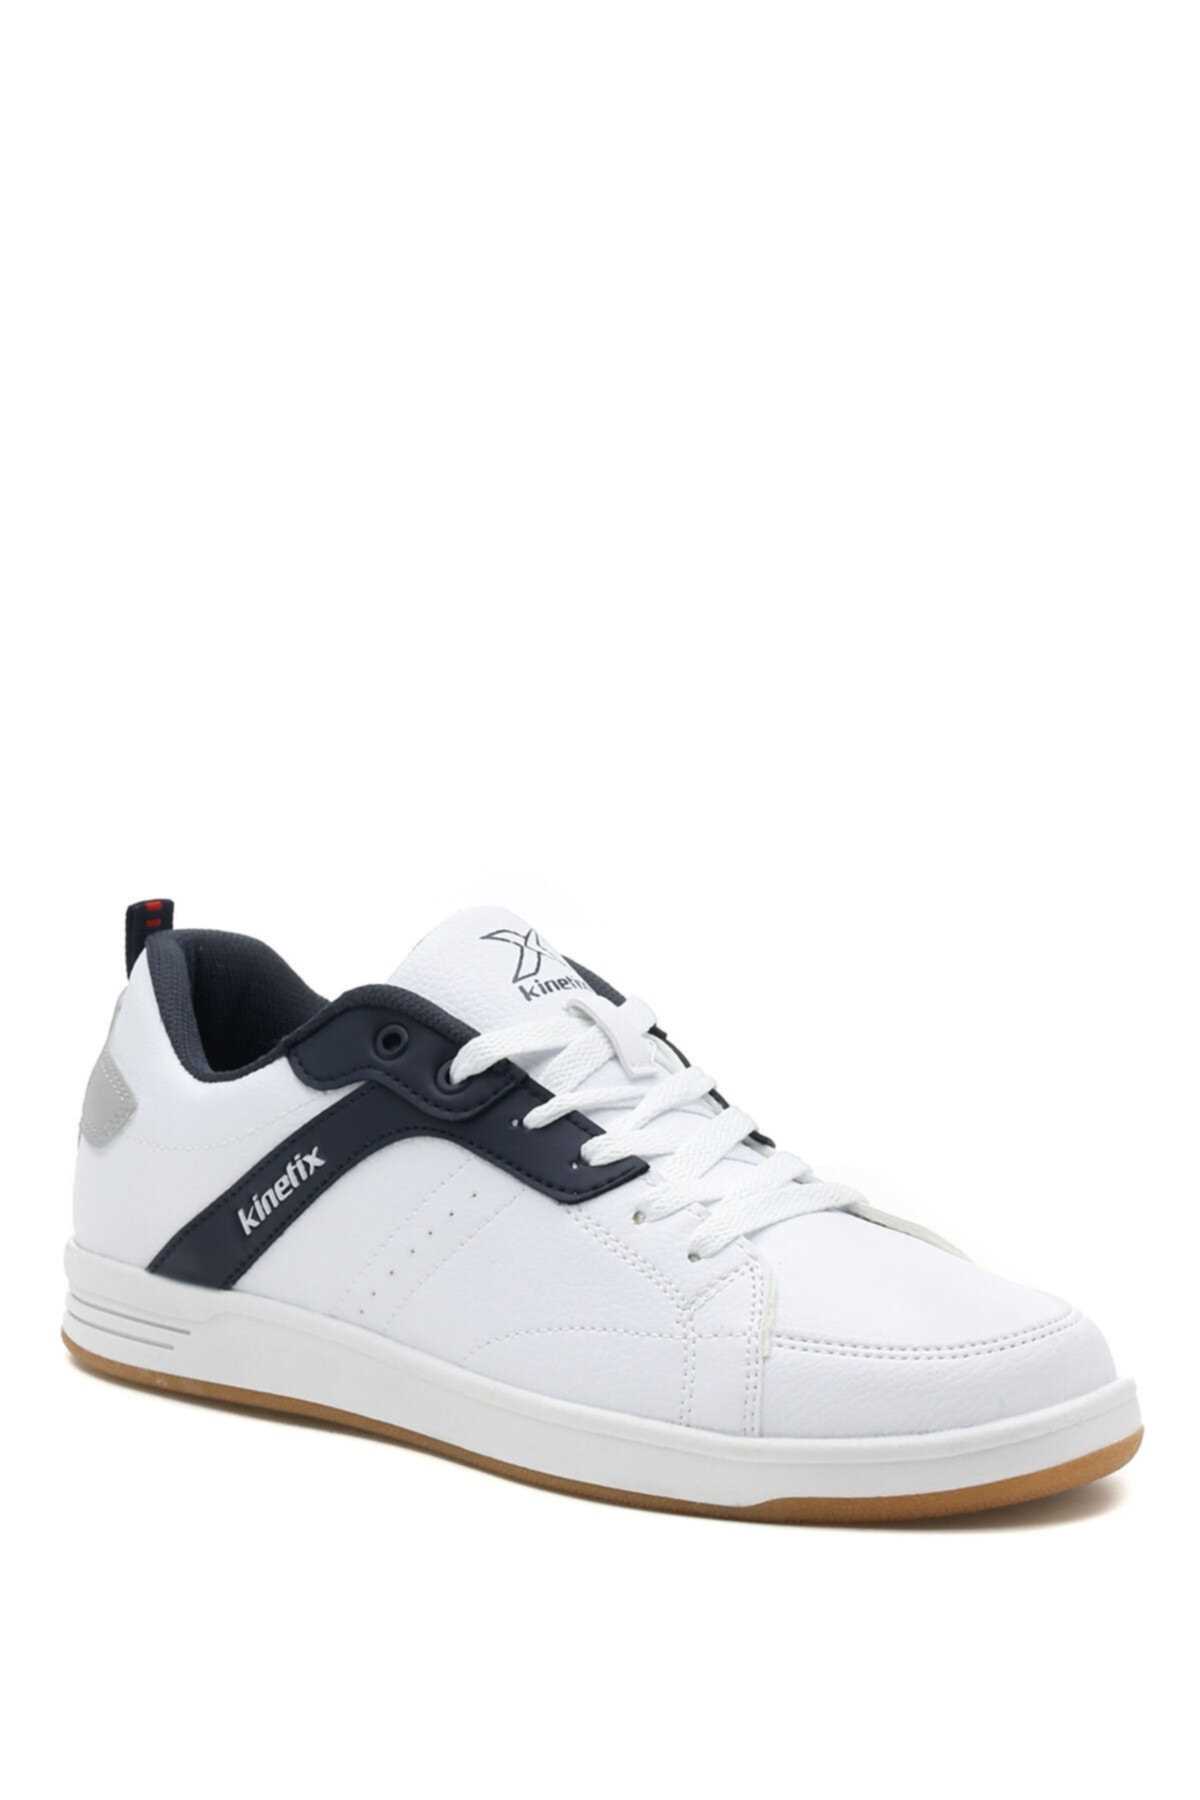 فروش کفش اسپرت مردانه برند کینتیکس kinetix رنگ سفید ty201088106